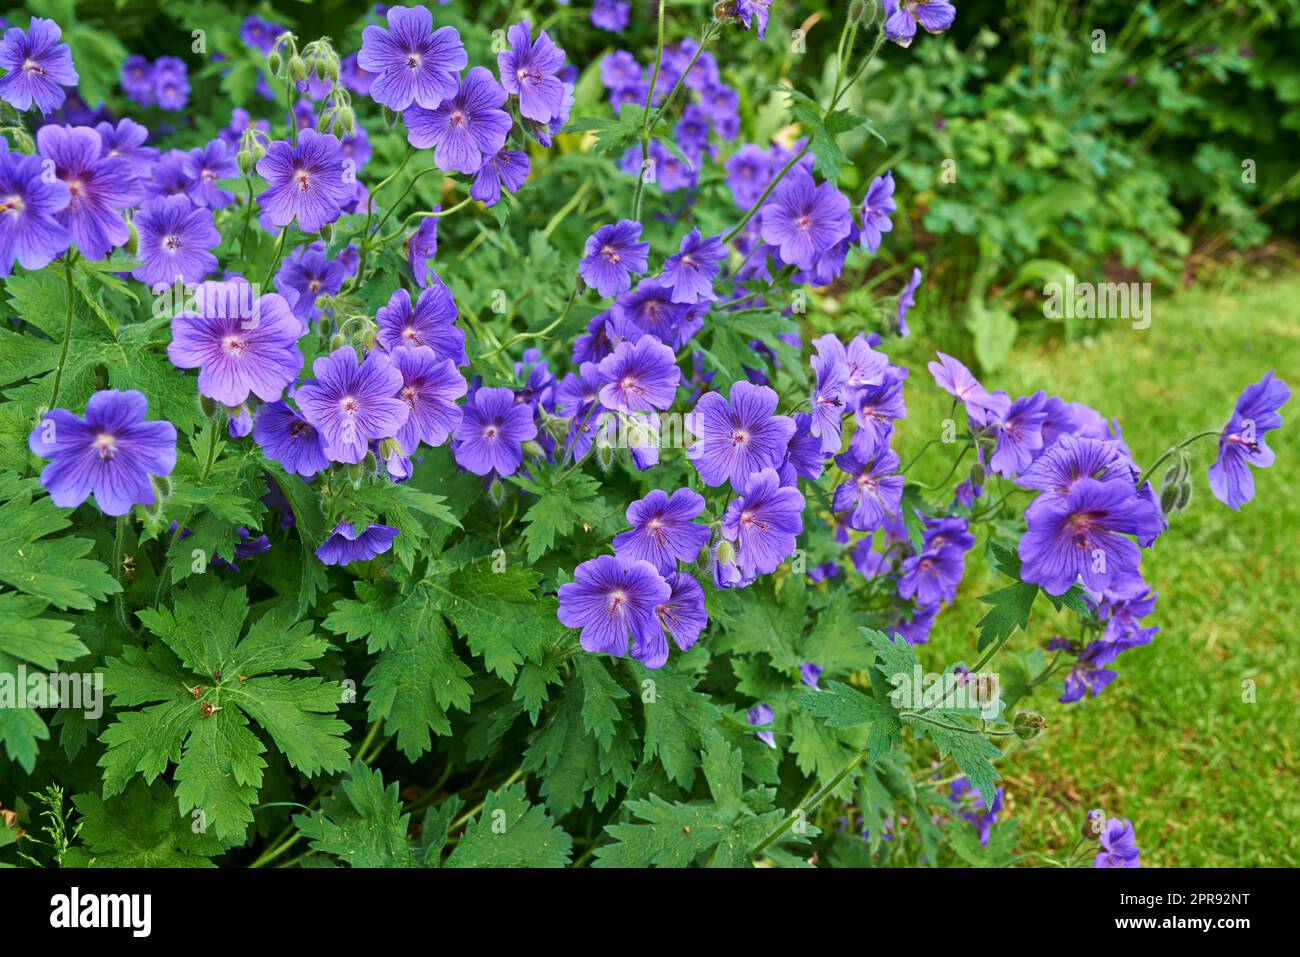 Ein Haufen wunderschöner lila Blüten, gebräuchlicher Name Kraniche der Familie Geraniaceae, wächst auf einer Wiese. Geranium Johnson Blau blüht mit blauen Blütenblättern in einem lebendigen natürlichen grünen Garten Stockfoto